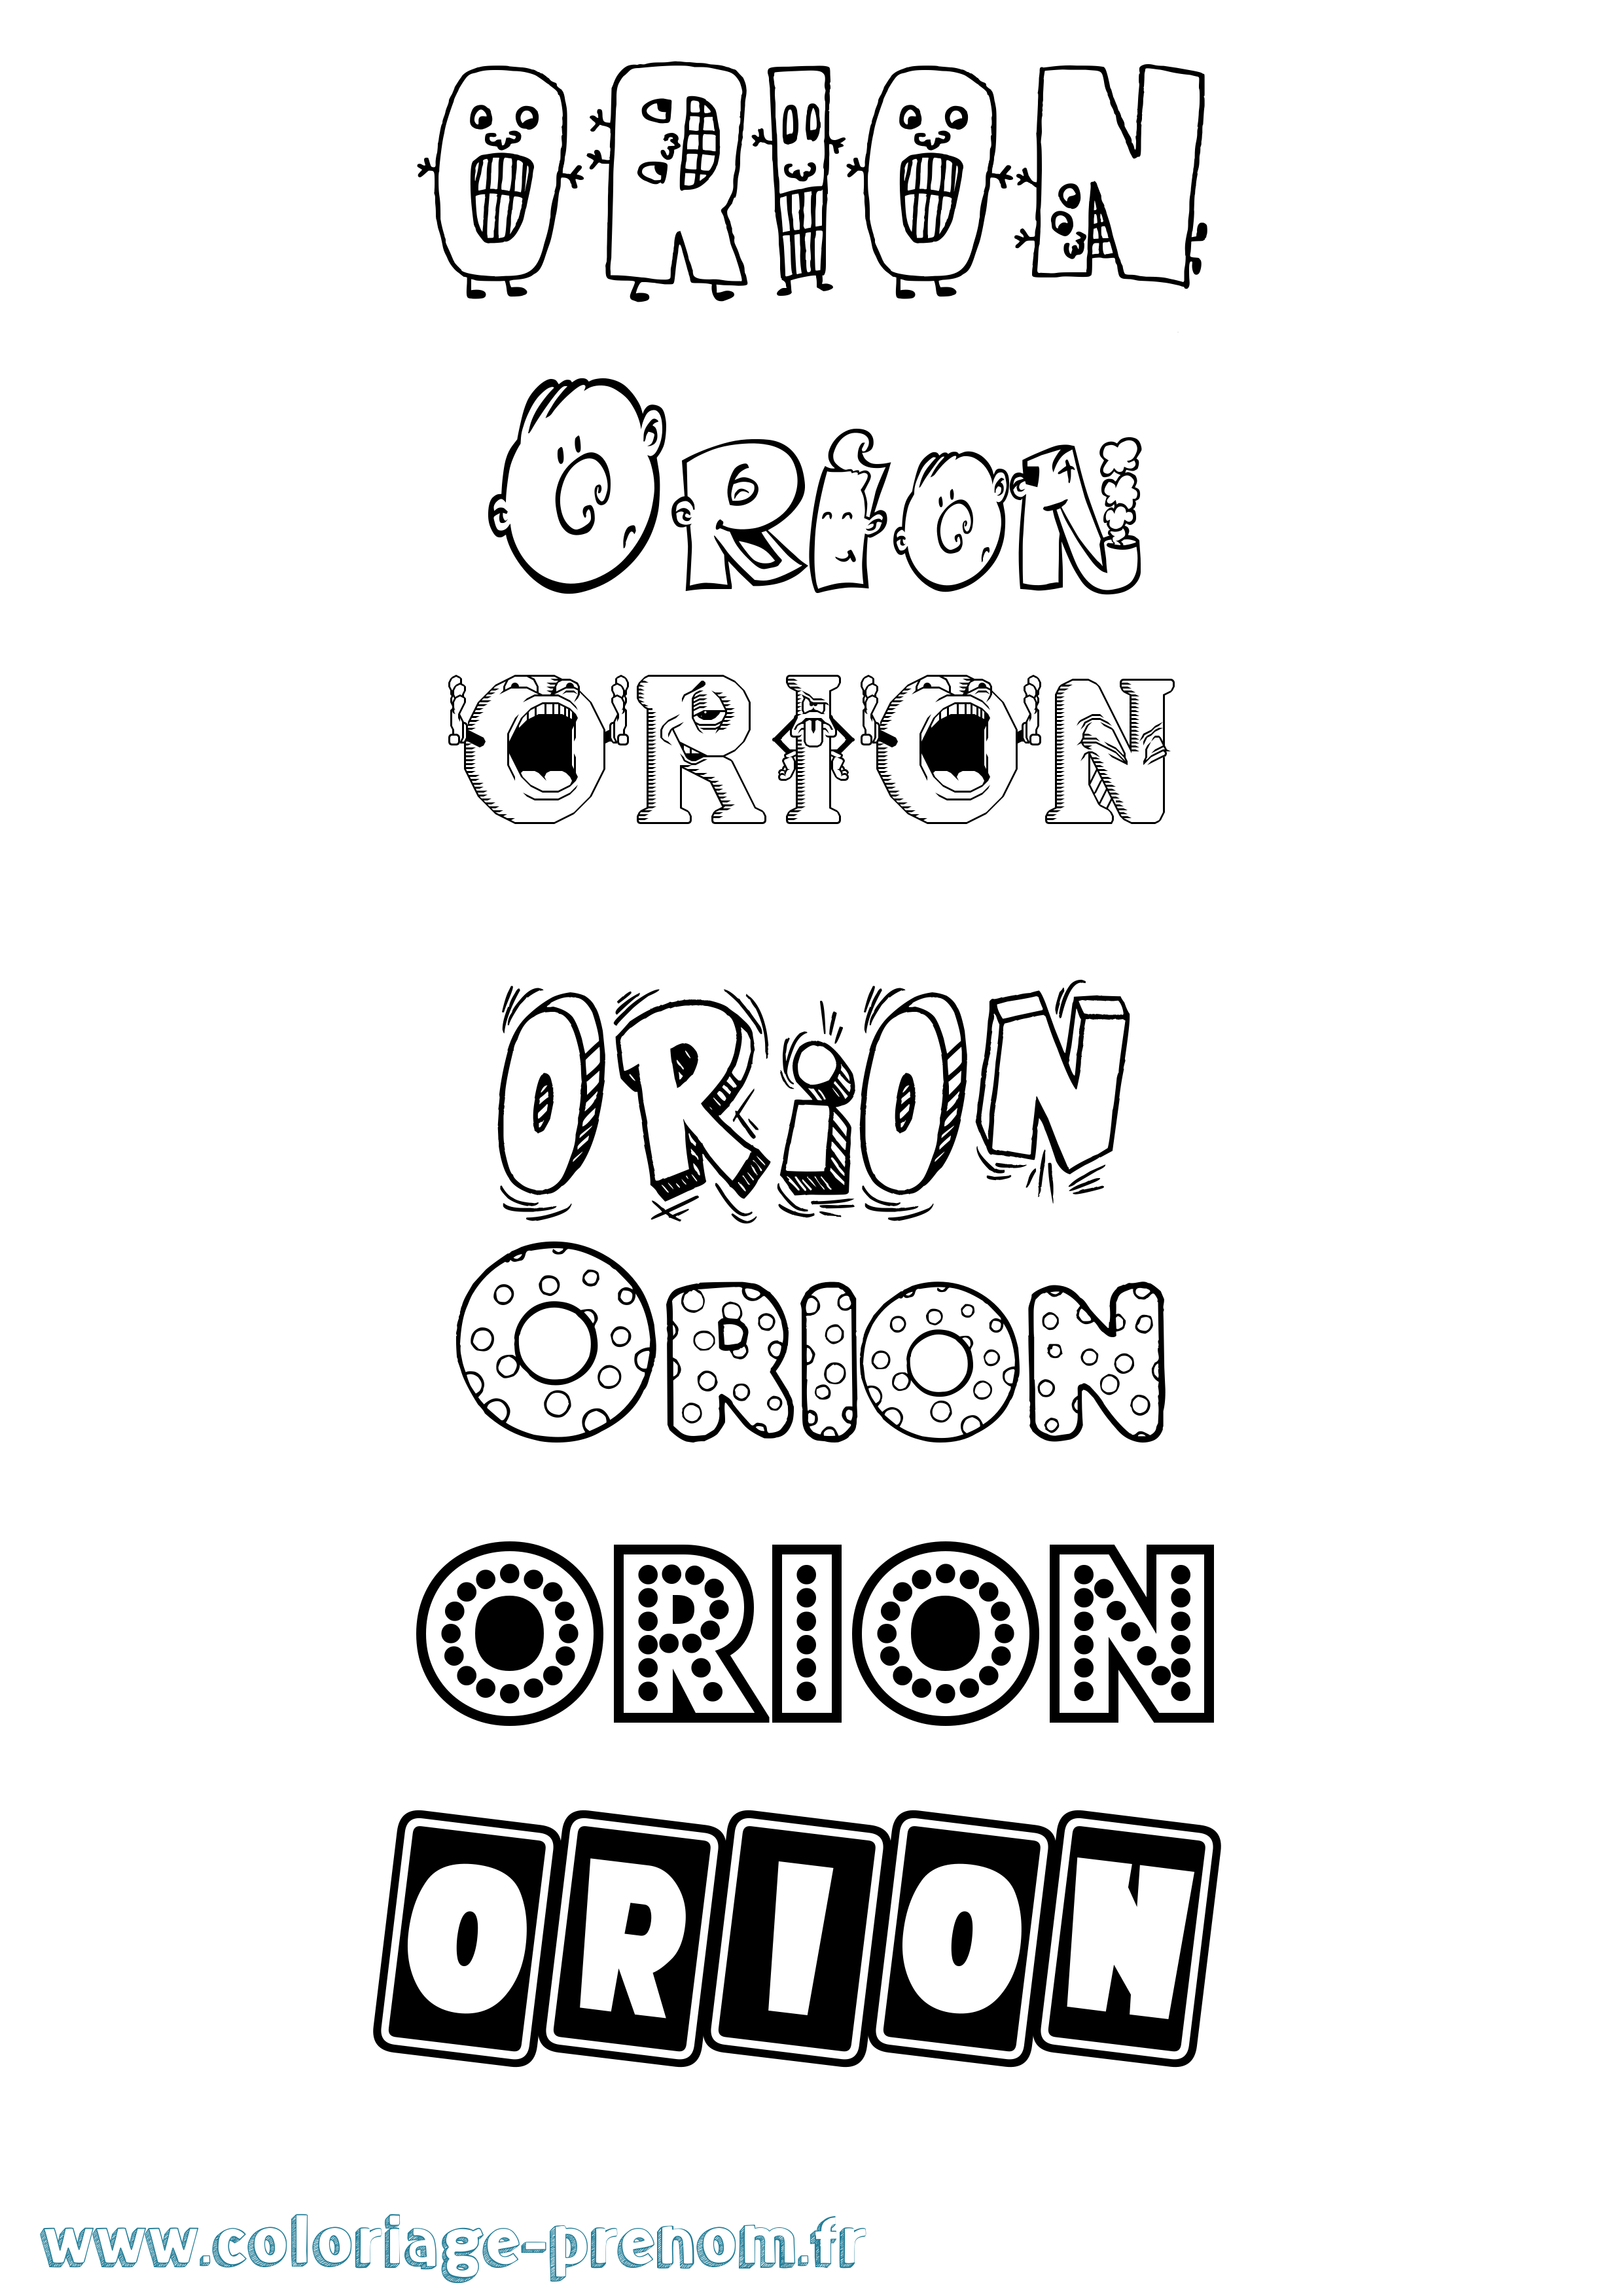 Coloriage prénom Orion Fun